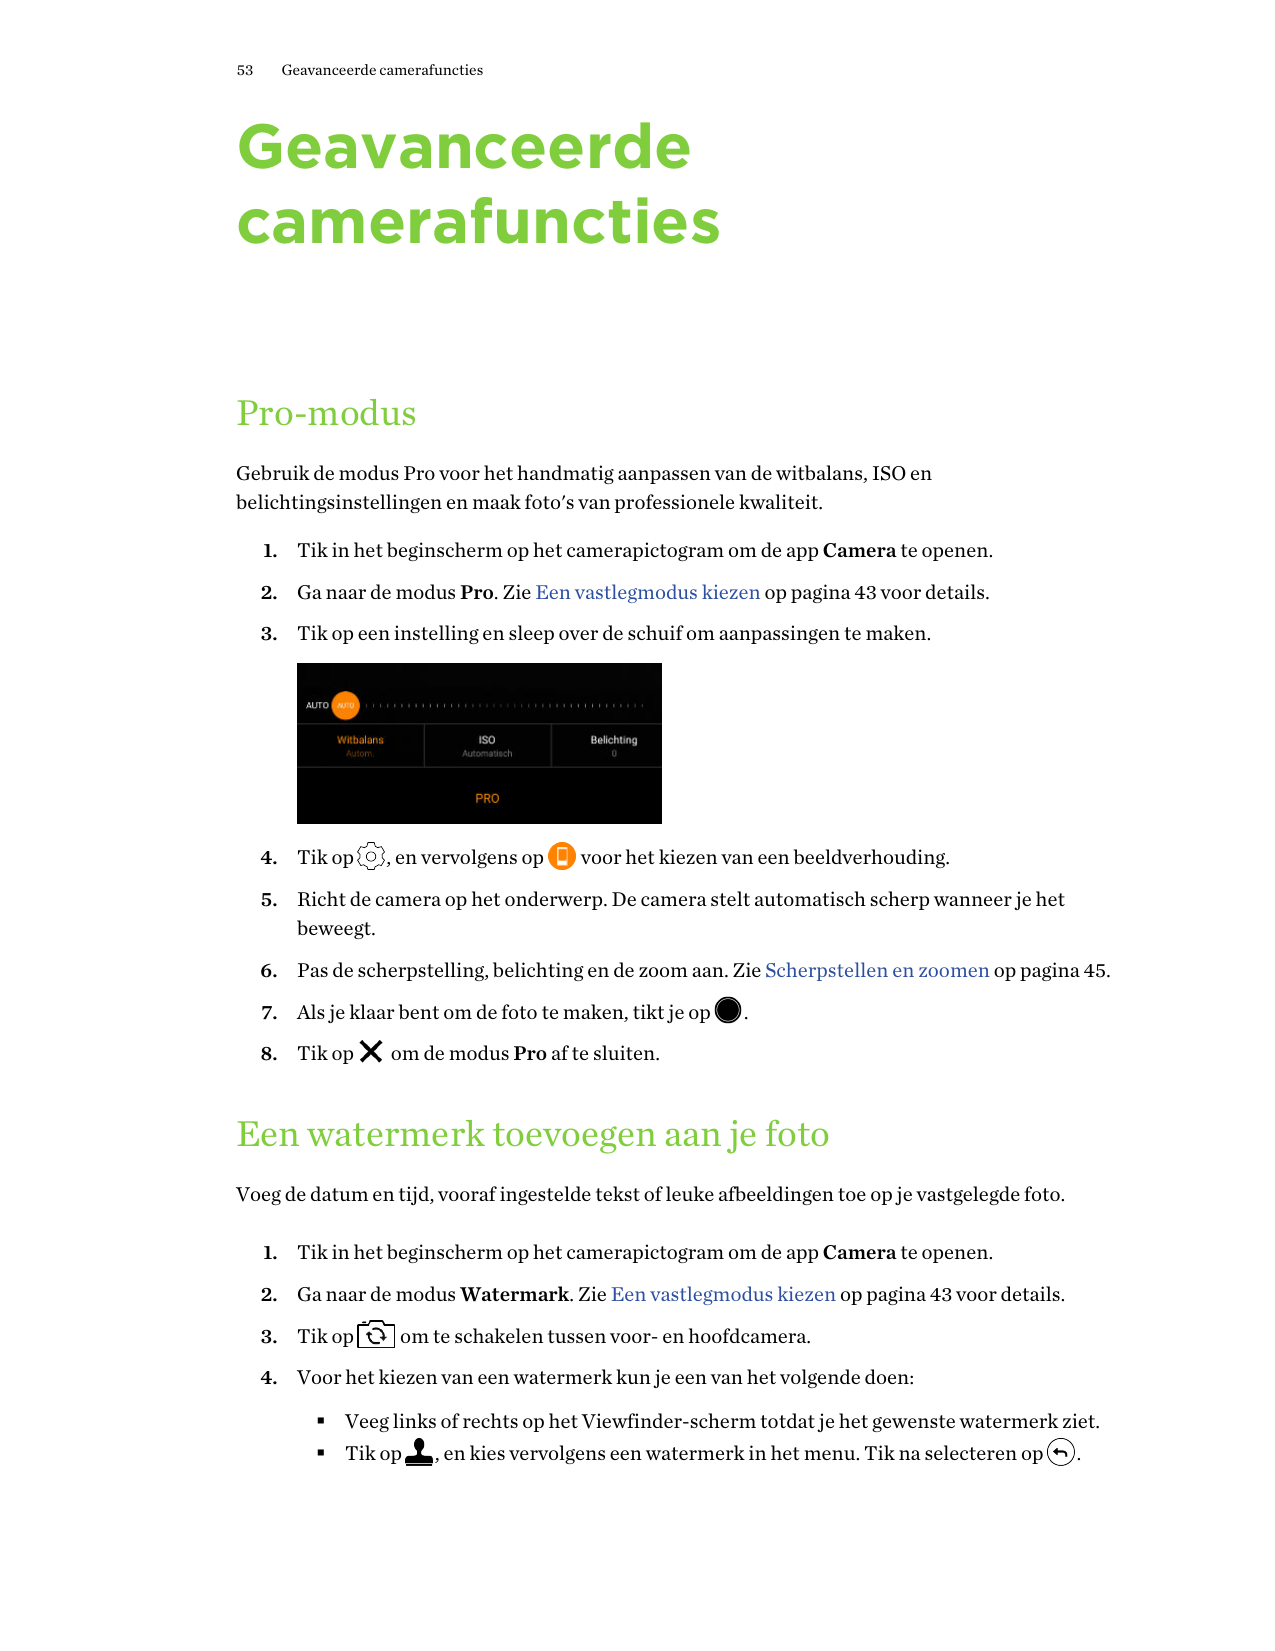 53Geavanceerde camerafunctiesGeavanceerdecamerafunctiesPro-modusGebruik de modus Pro voor het handmatig aanpassen van de witbala